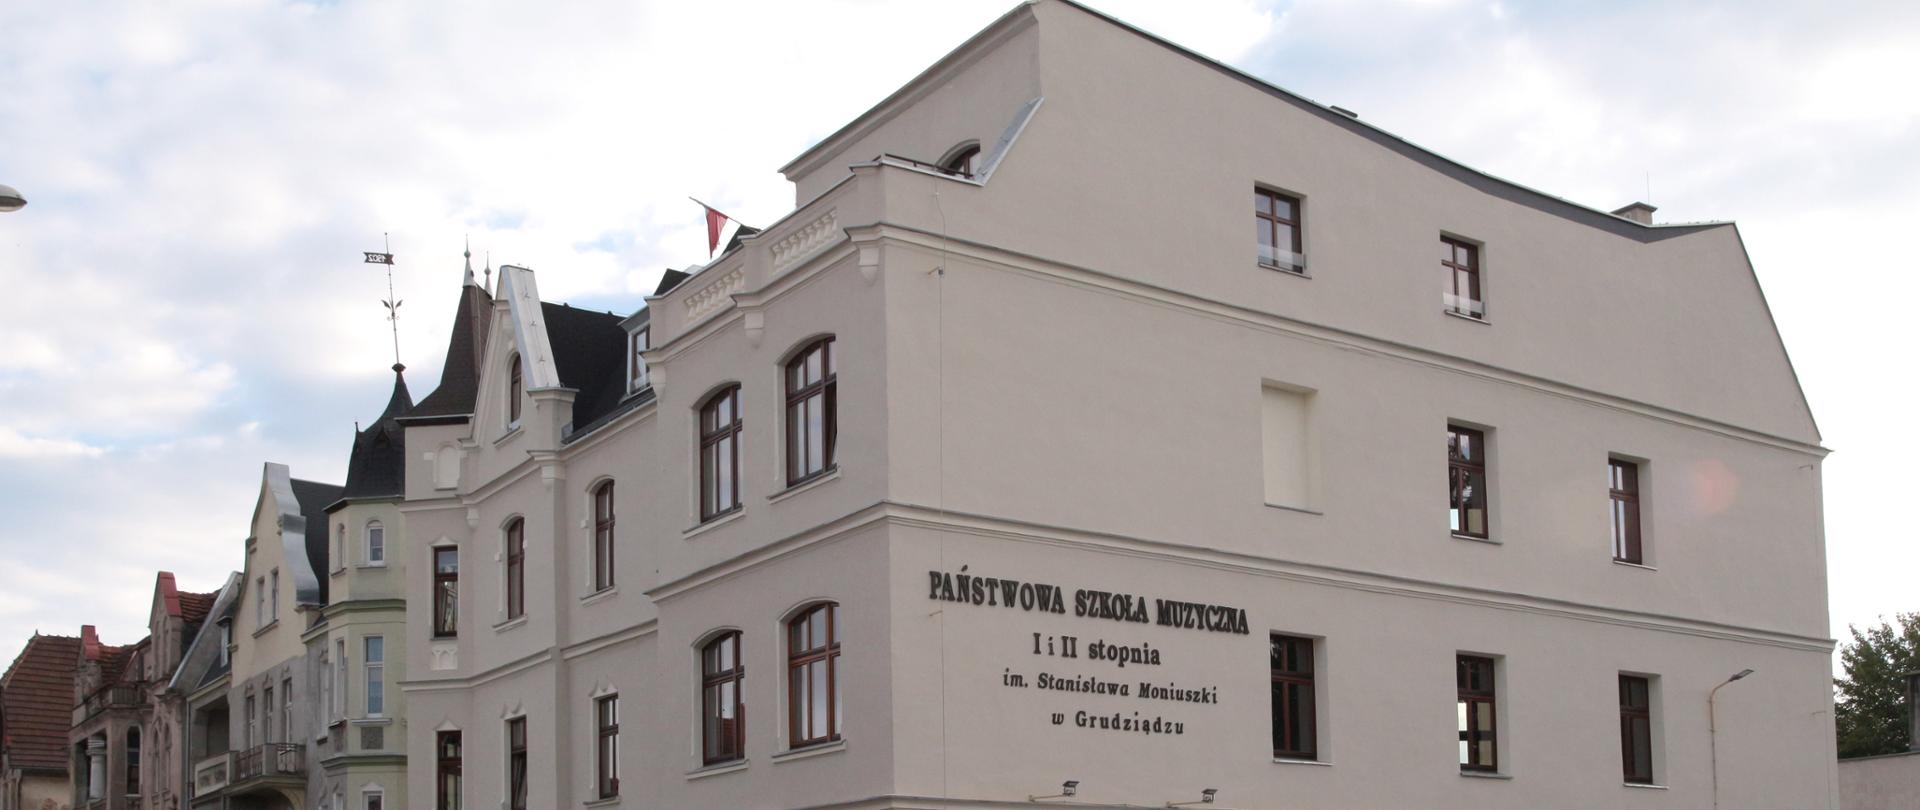 Zdjęcie przedstawia trzykondygnacyjną kamienicę w kolorze beżowym z napisem na ścianie Państwowa Szkoła Muzyczna I i II stopnia im. Stanisława Moniuszki w Grudziądzu